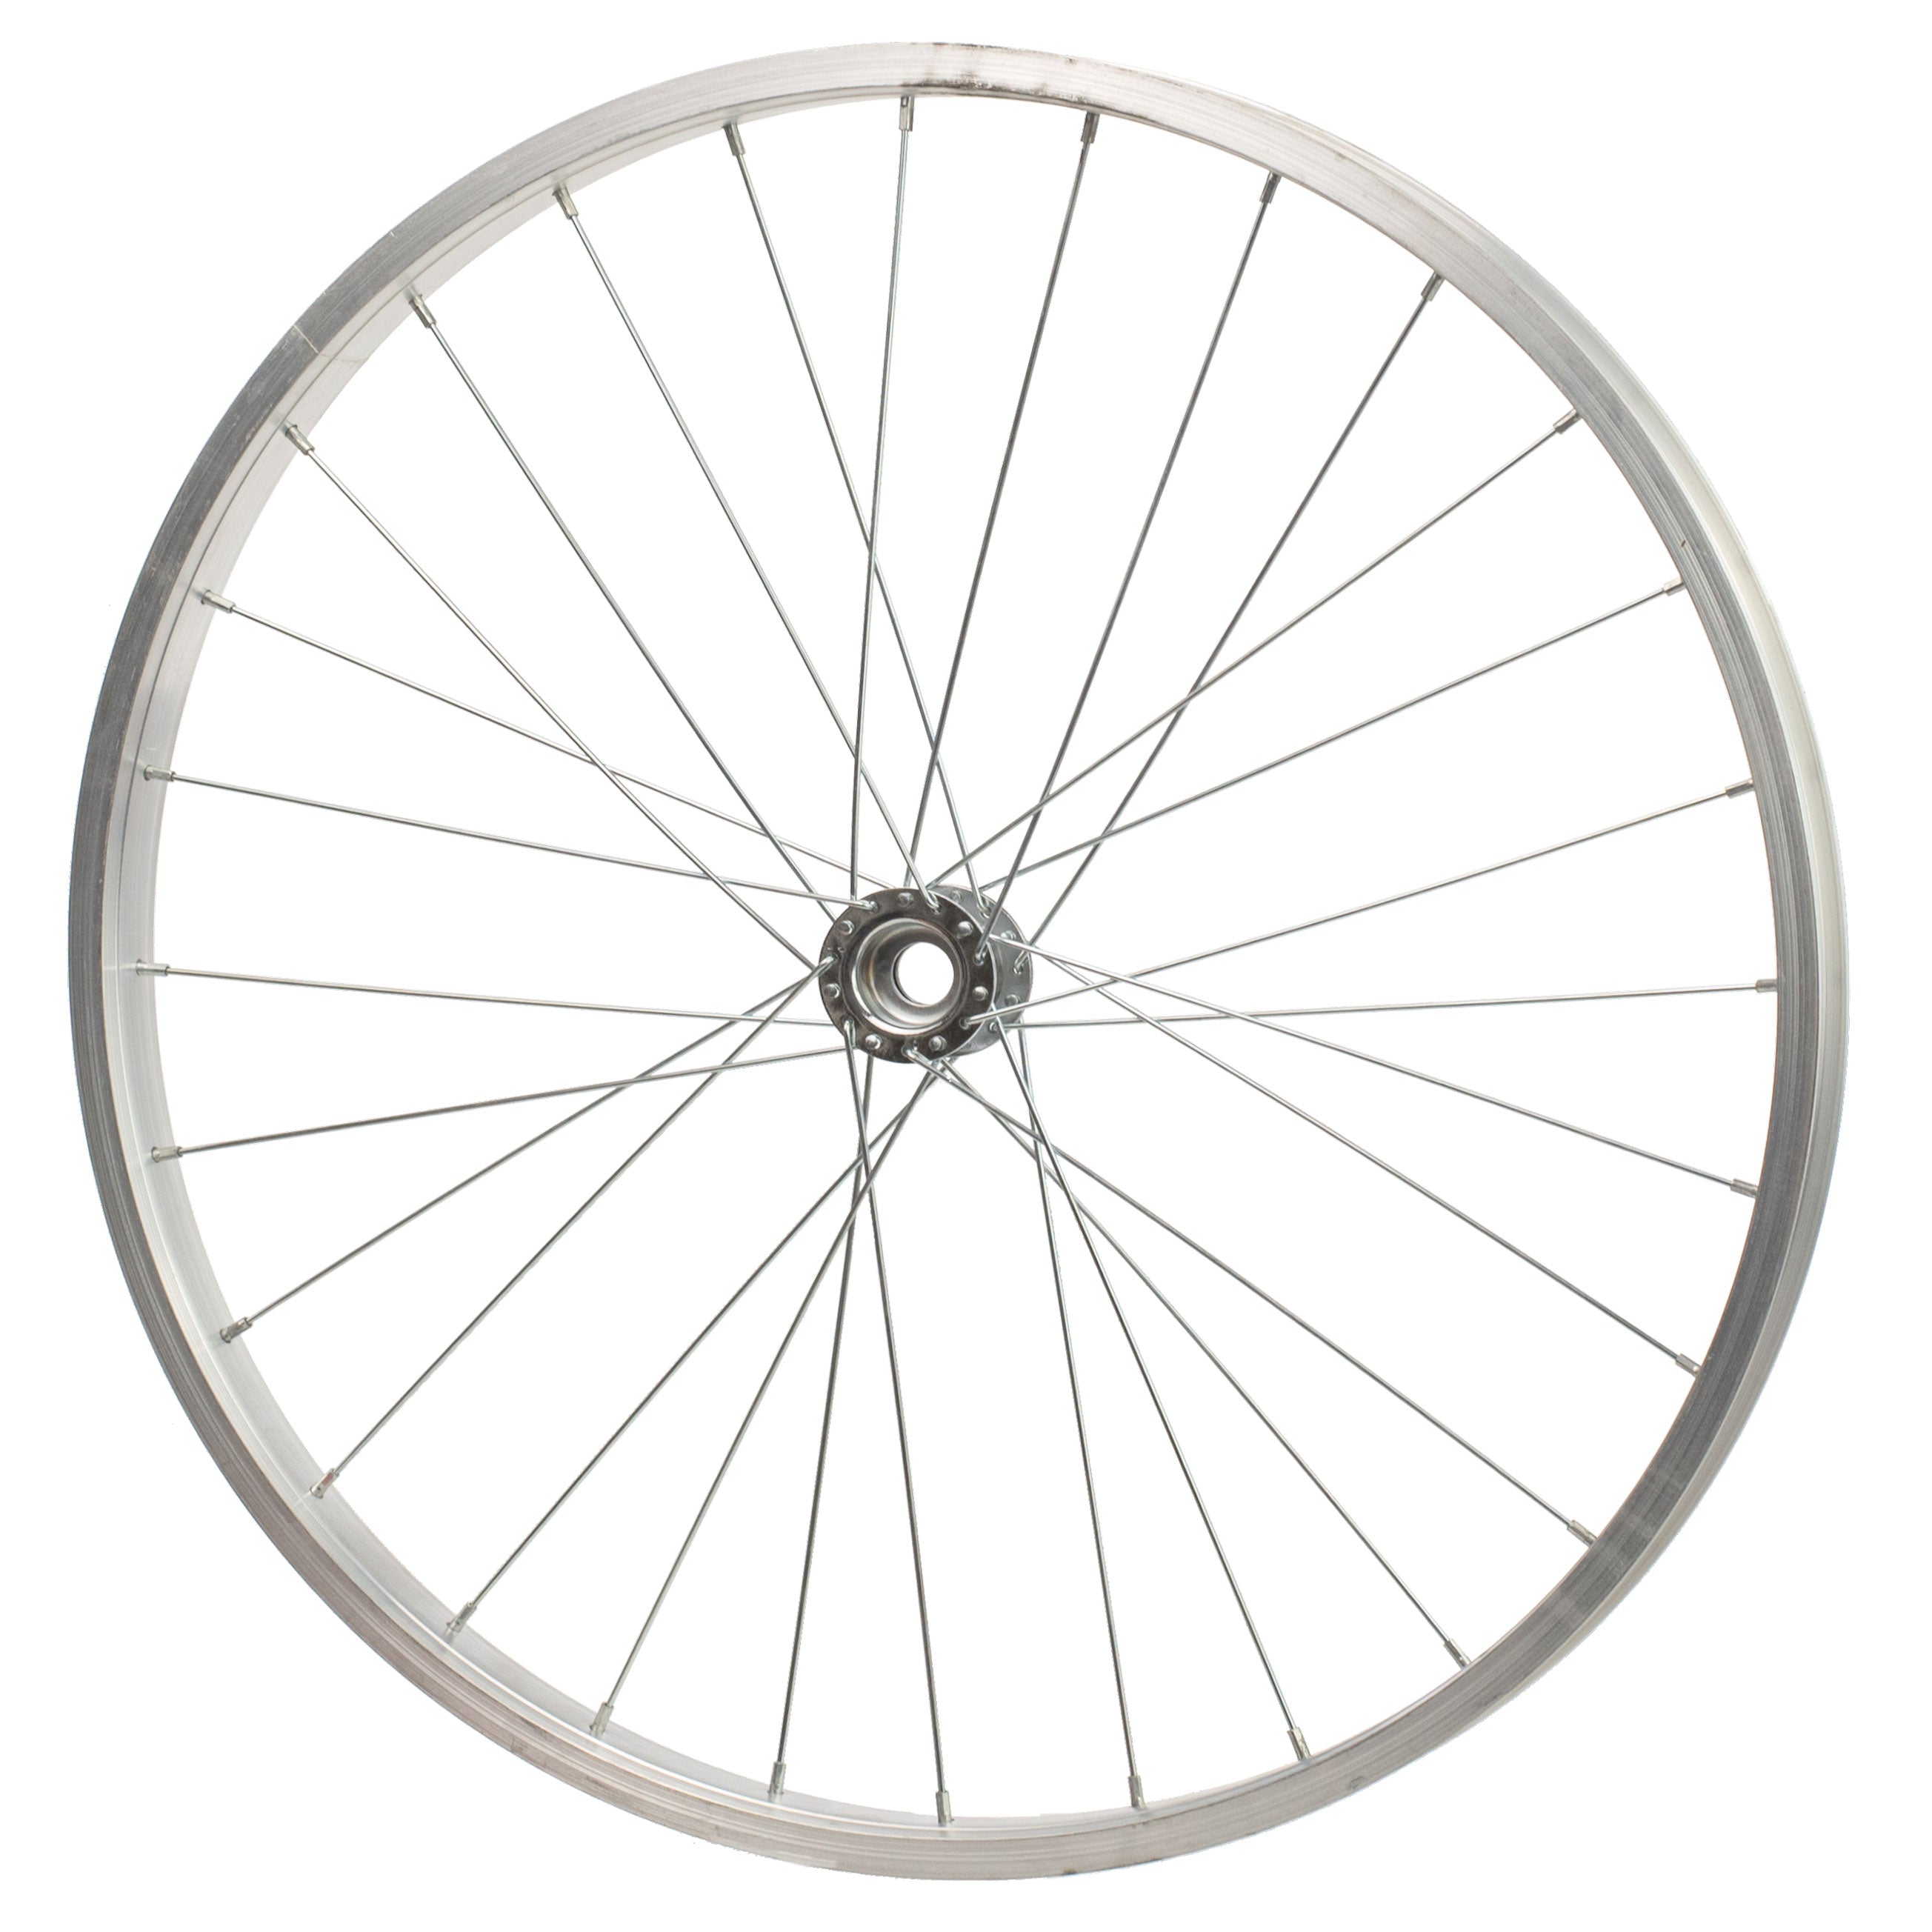 20" Decorative Bicycle Rim: Aluminum